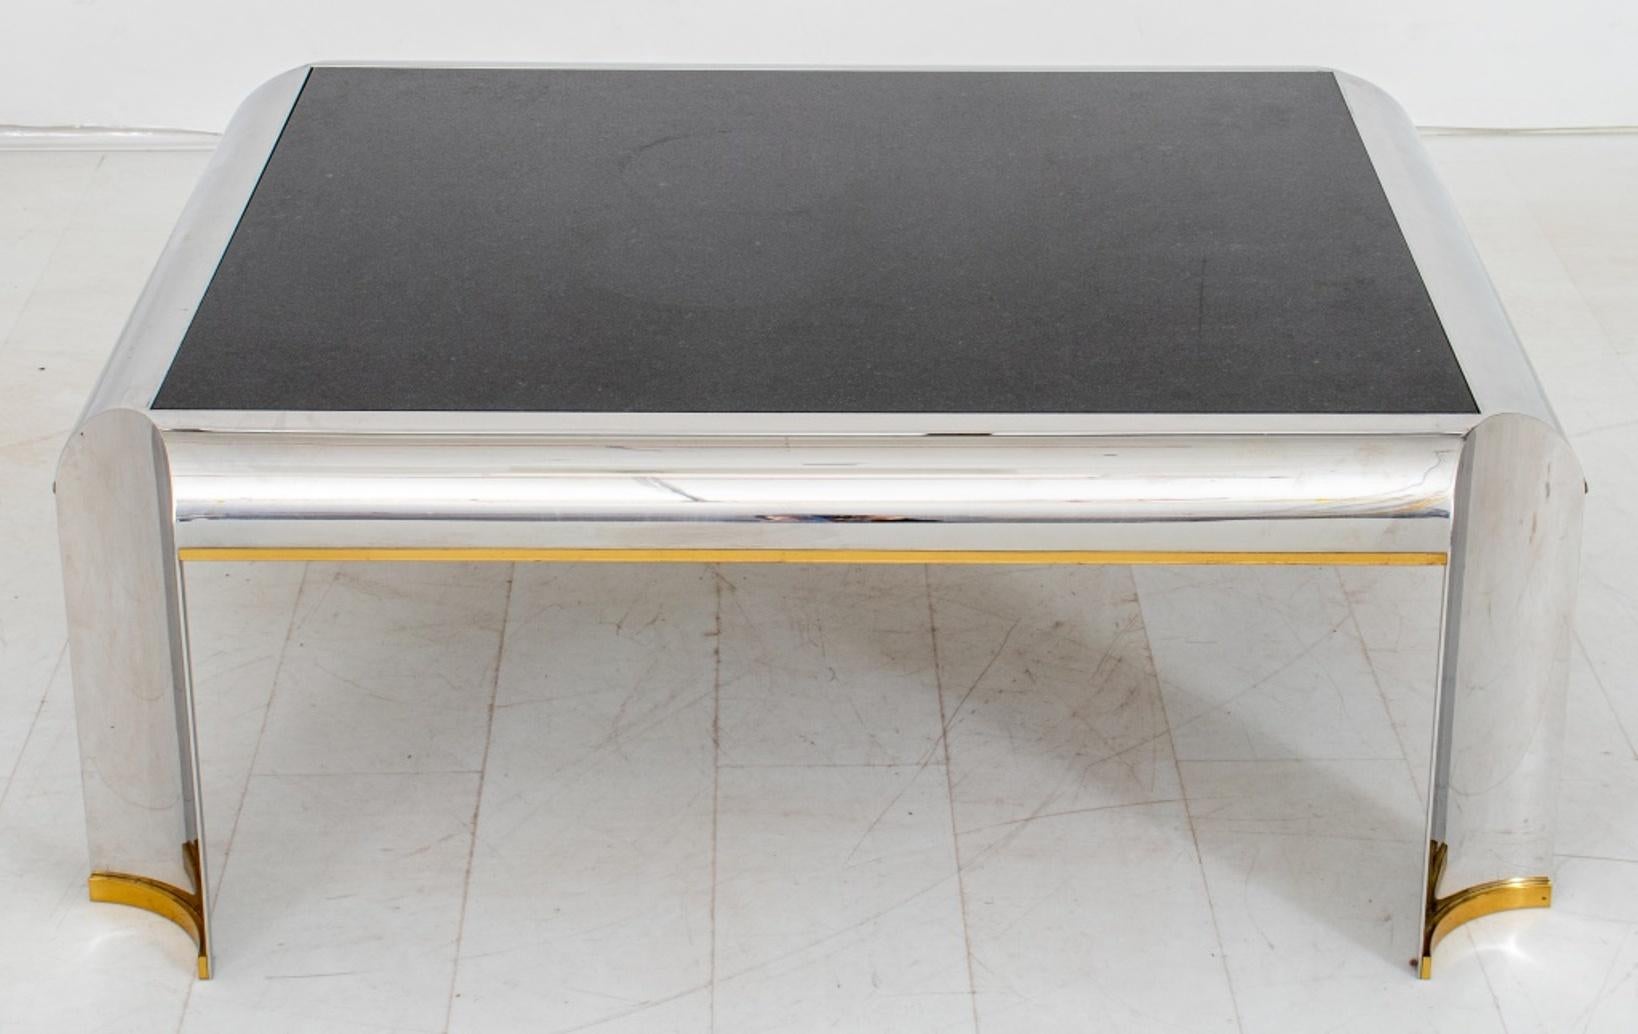 Table basse ou de cocktail de style Karl Springer (allemand/américain, 1931-1991) avec une structure en métal chromé et quatre pieds concaves, des pieds en laiton doré et un plateau en marbre noir.

Dimensions : 16